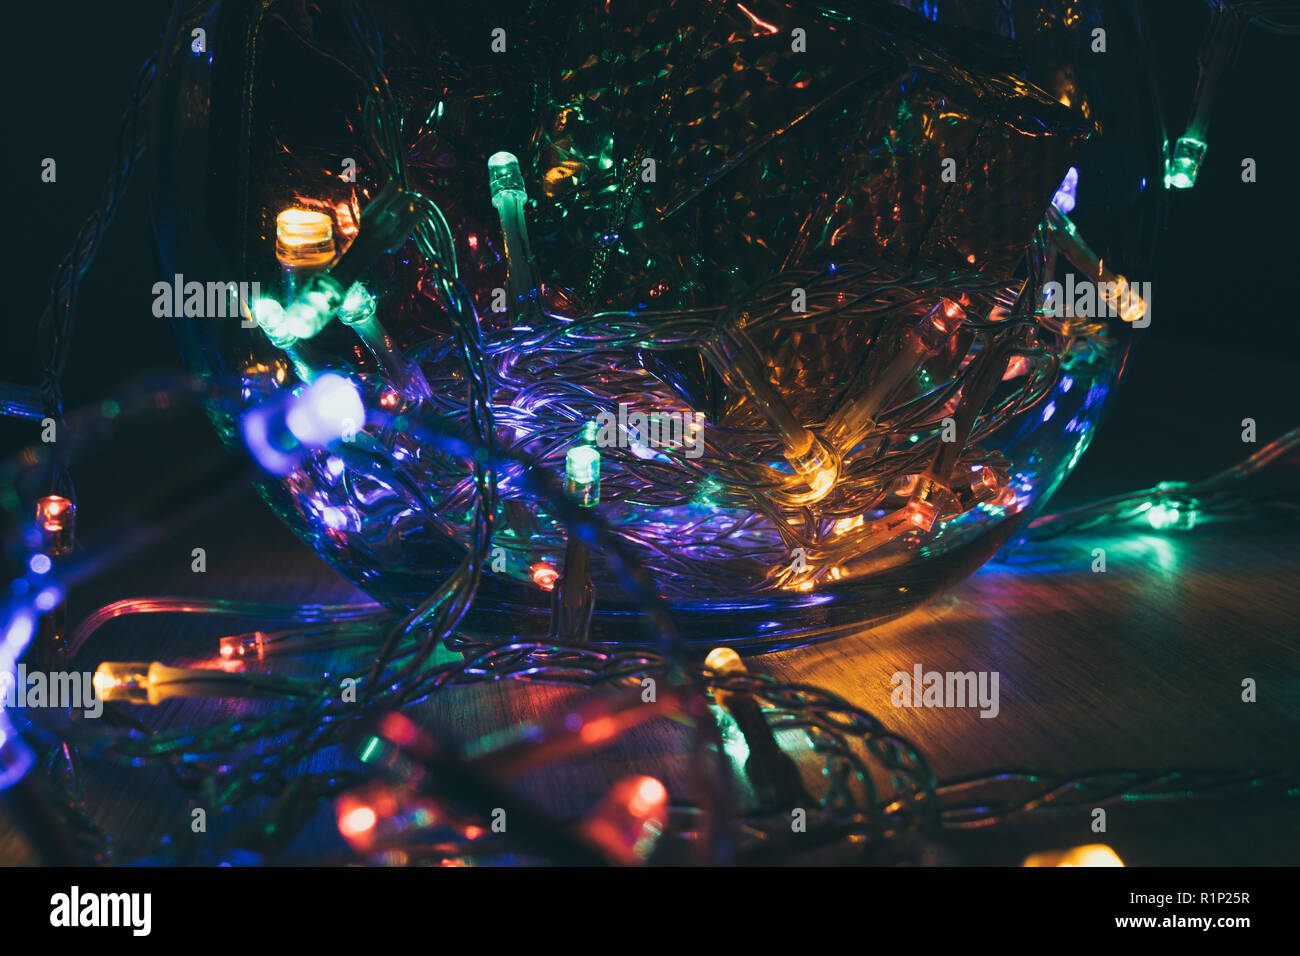 Weihnachtsbeleuchtung innen eine Kristallkugel auf einem hölzernen Hintergrund. Weihnachtsdekoration Stockfoto